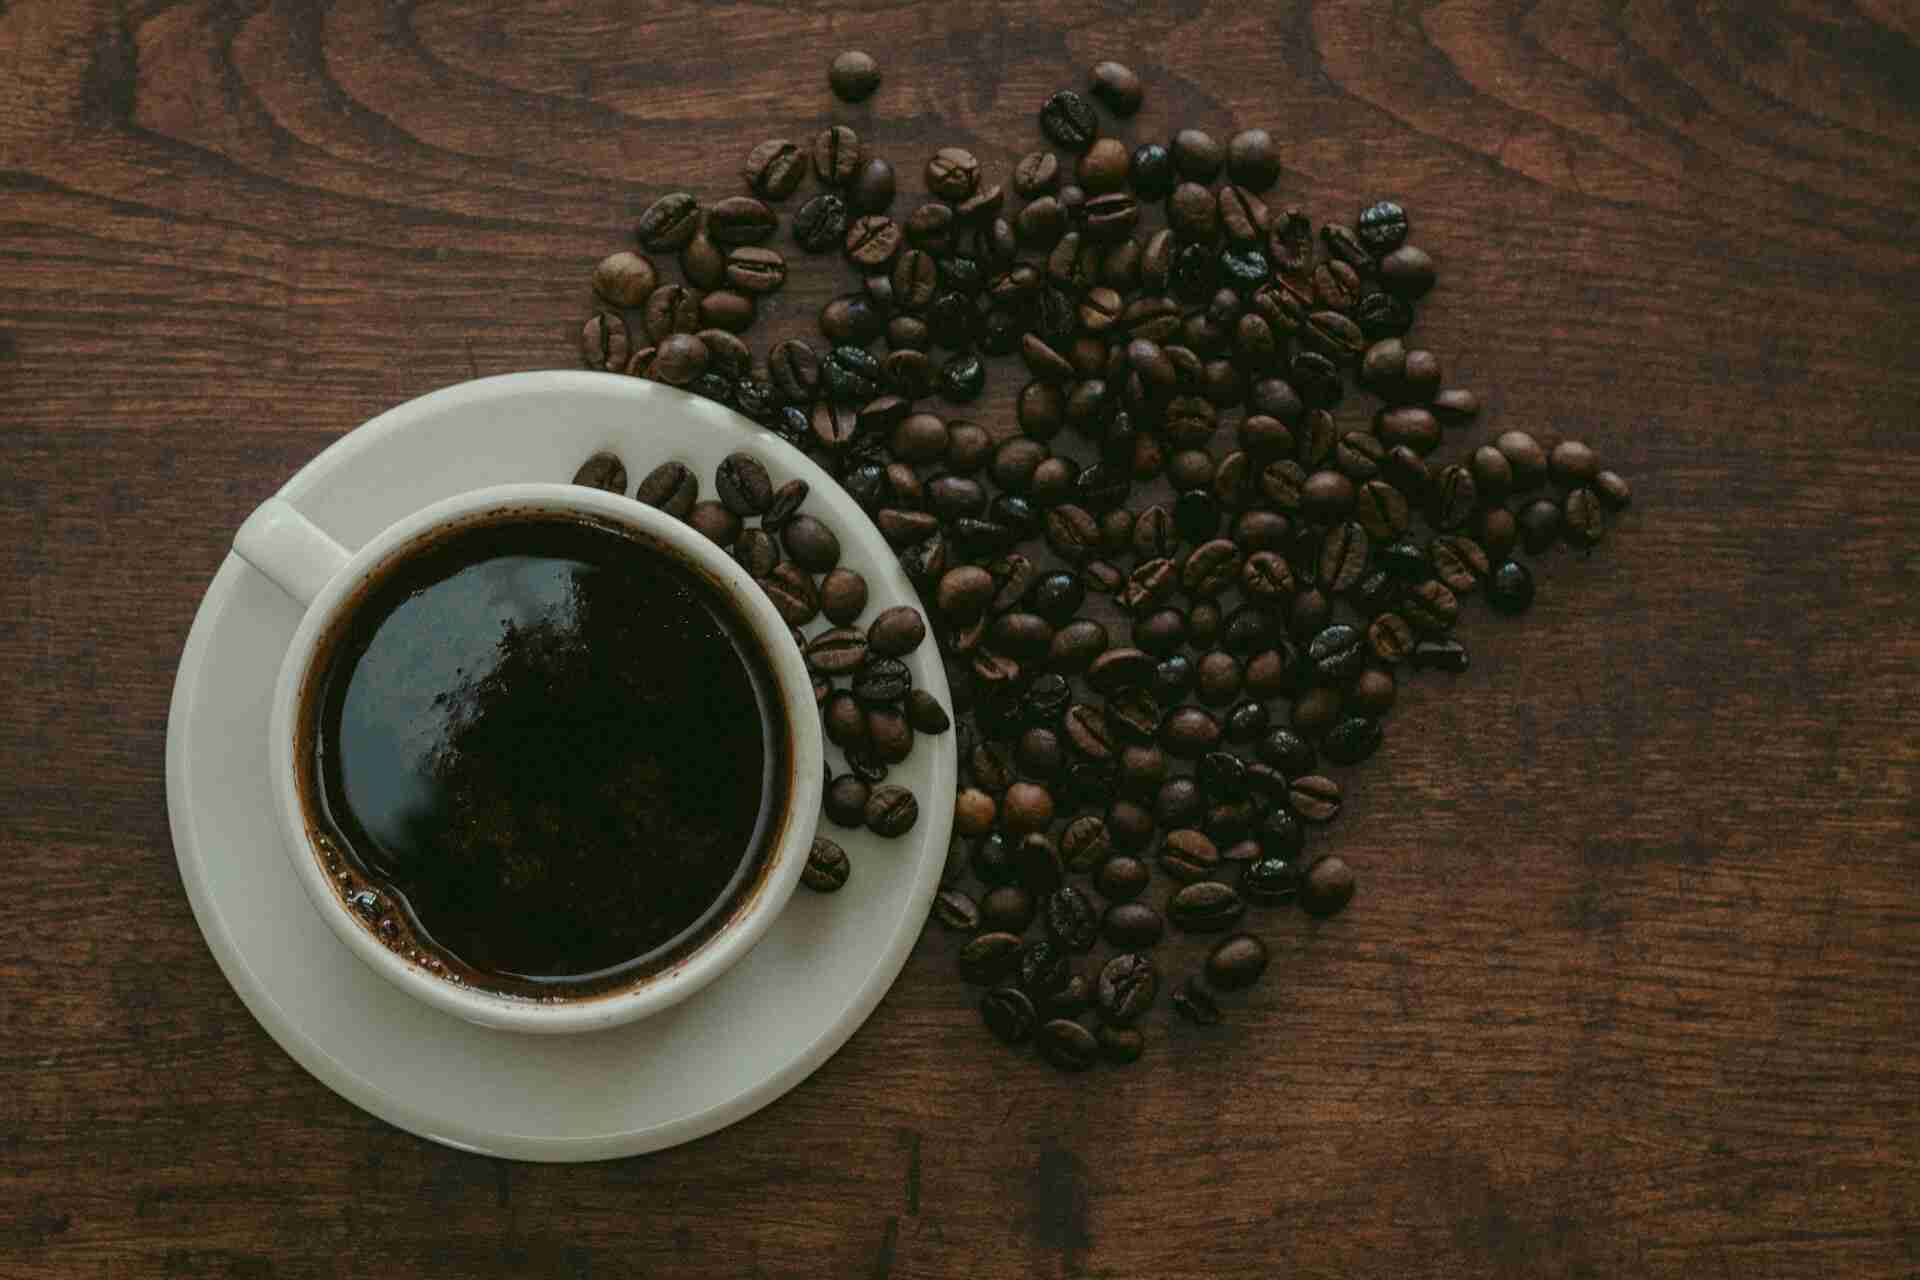 IJC: Учёные запустили анализ, что кофе защищает от рака кишечника и метастазов